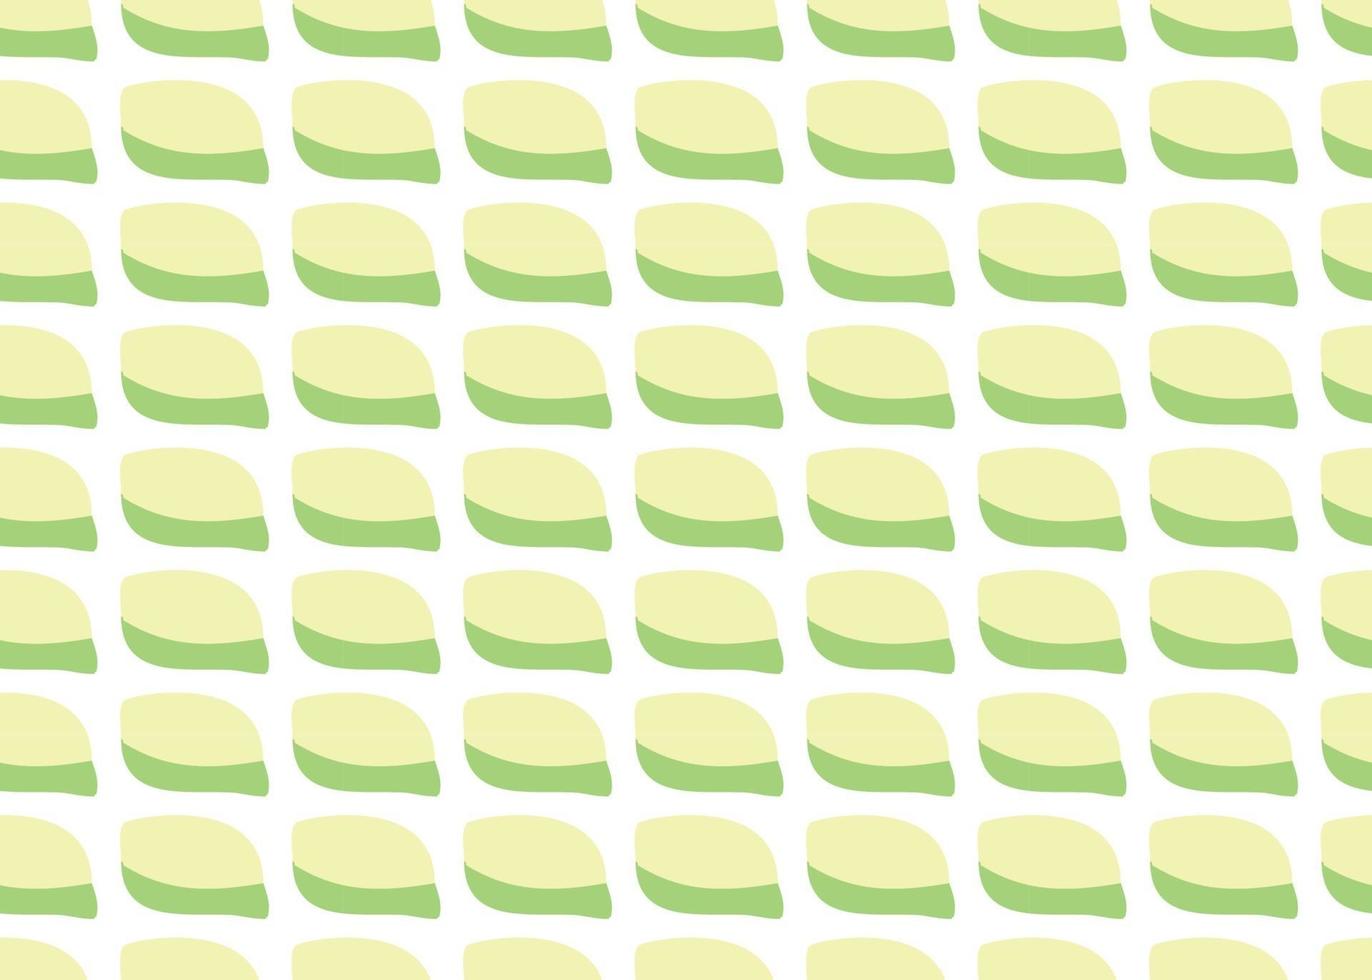 Vector texture di sfondo, seamless pattern. colori disegnati a mano, verdi, gialli, bianchi.